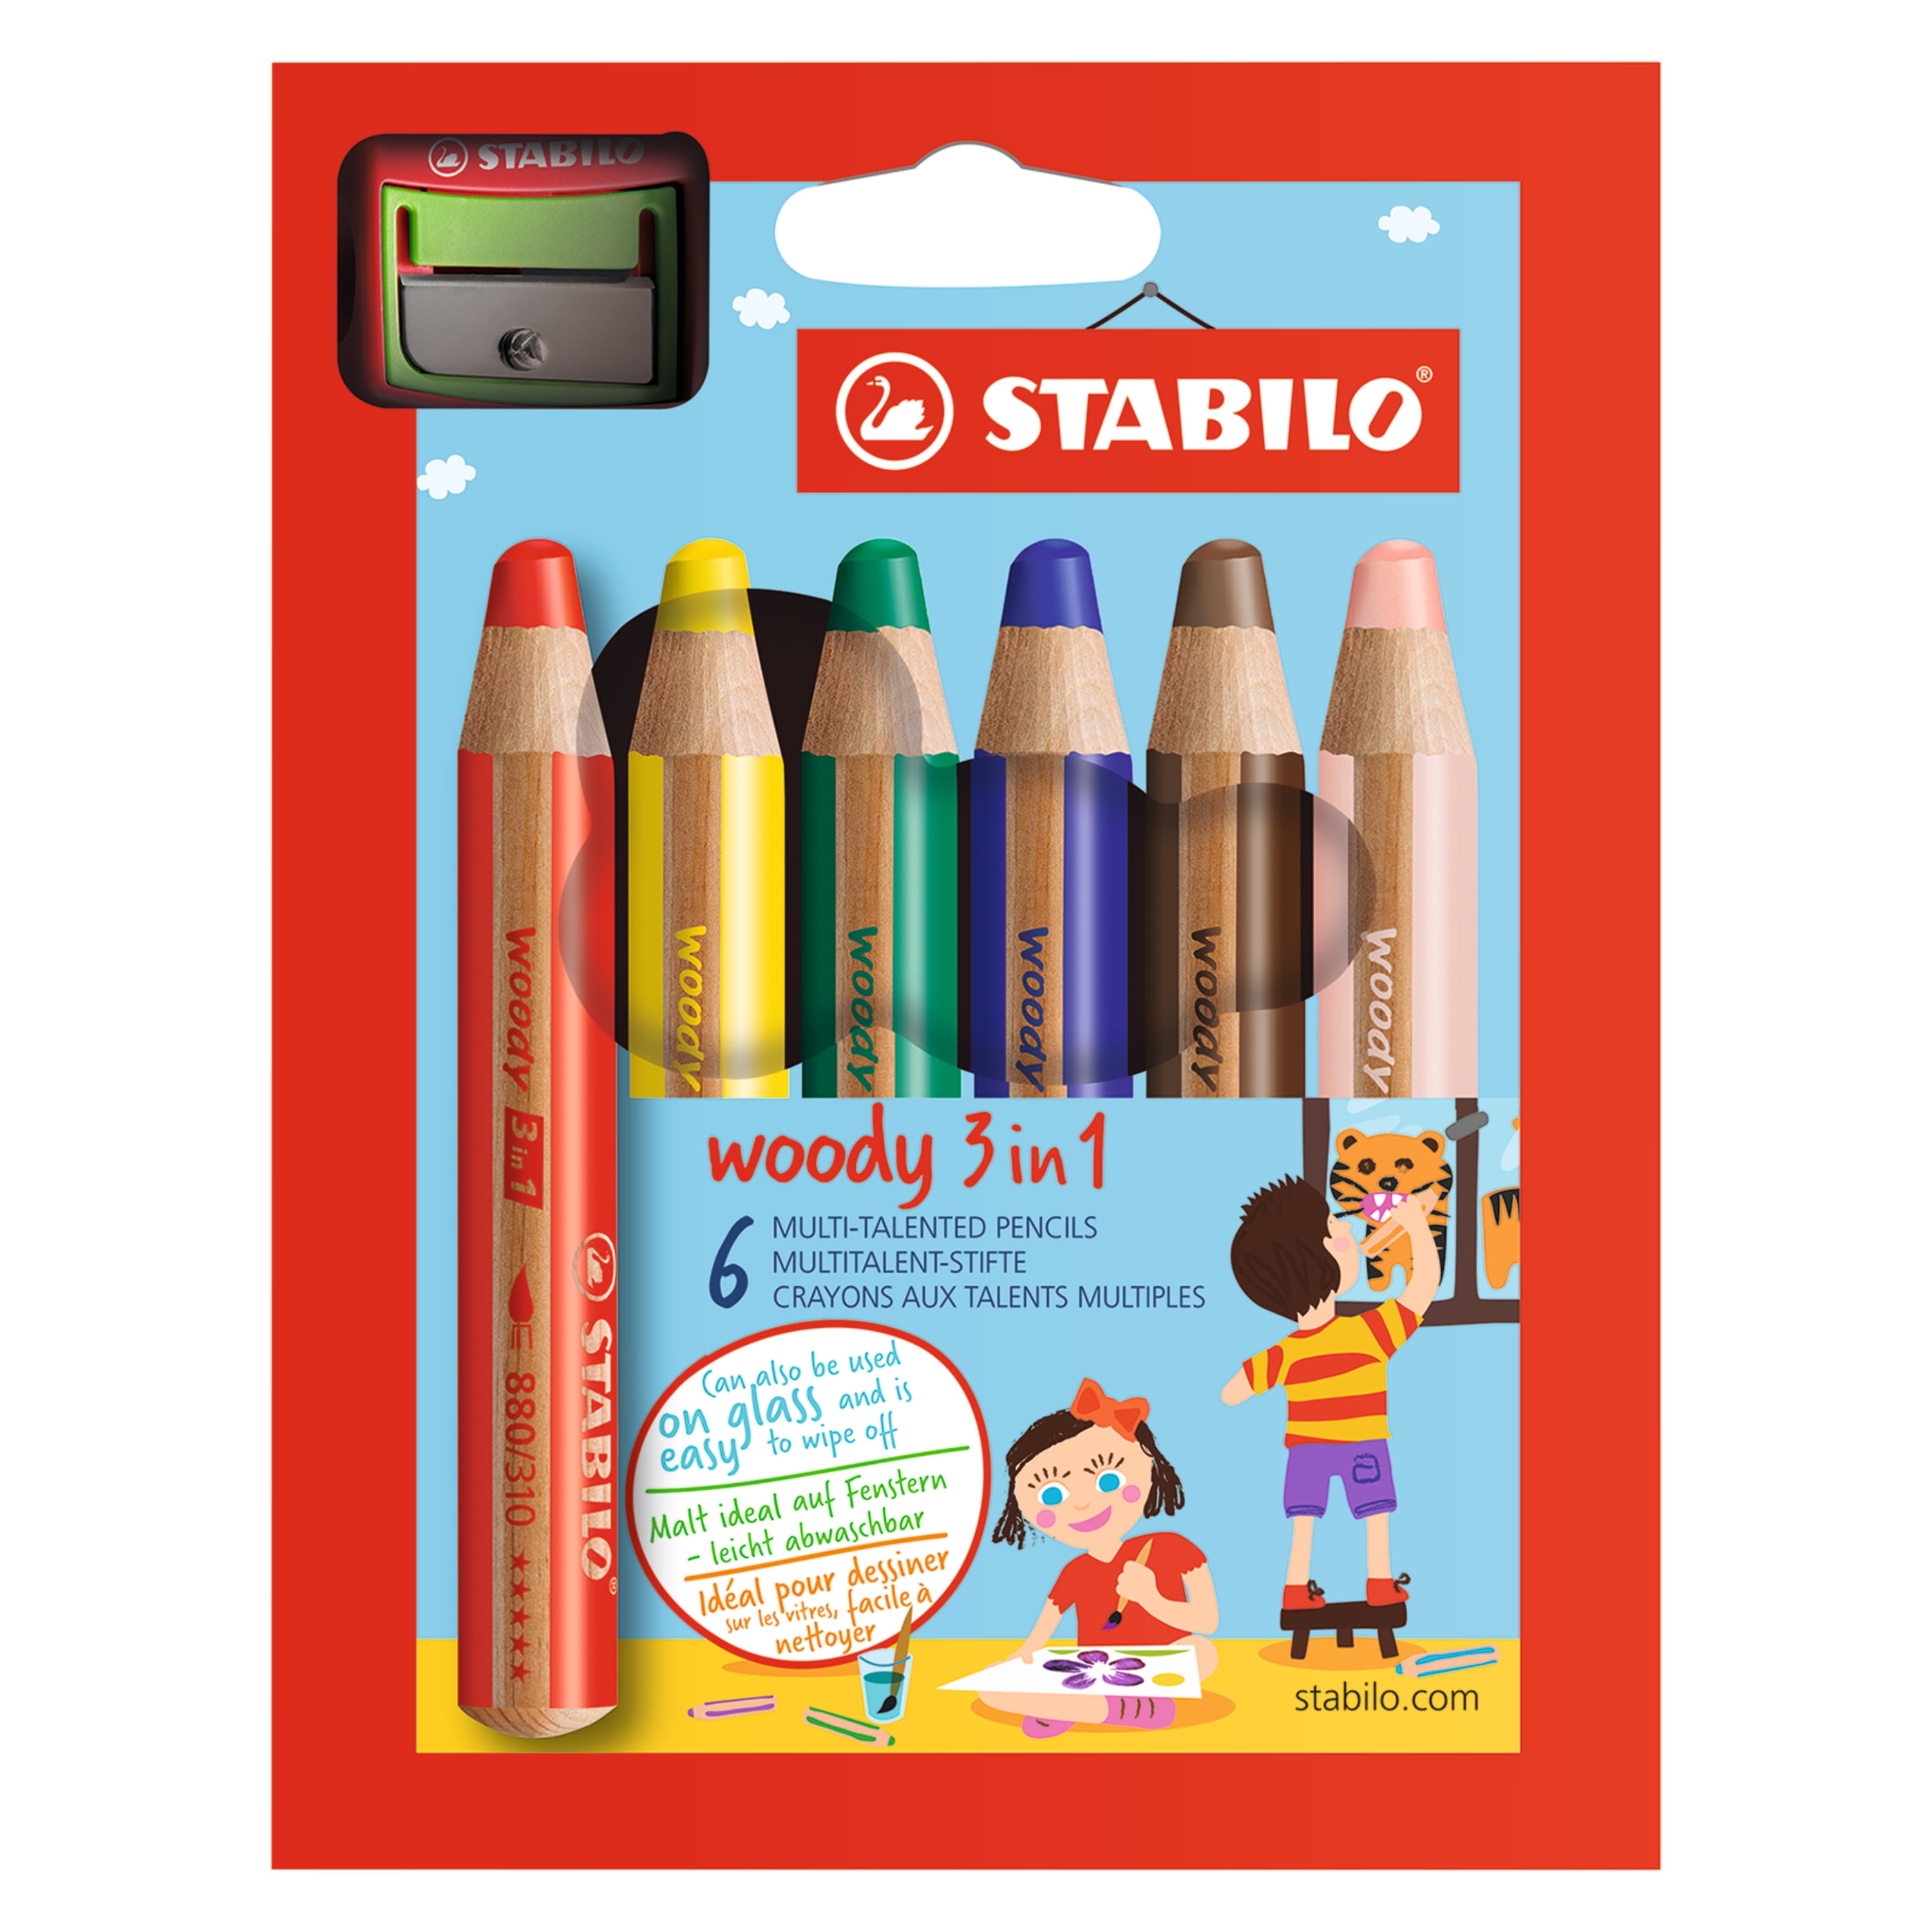 Stabilo Woody Jumbo Pencil Set of 18-3 in 1 Sharpener and Paint Brush 